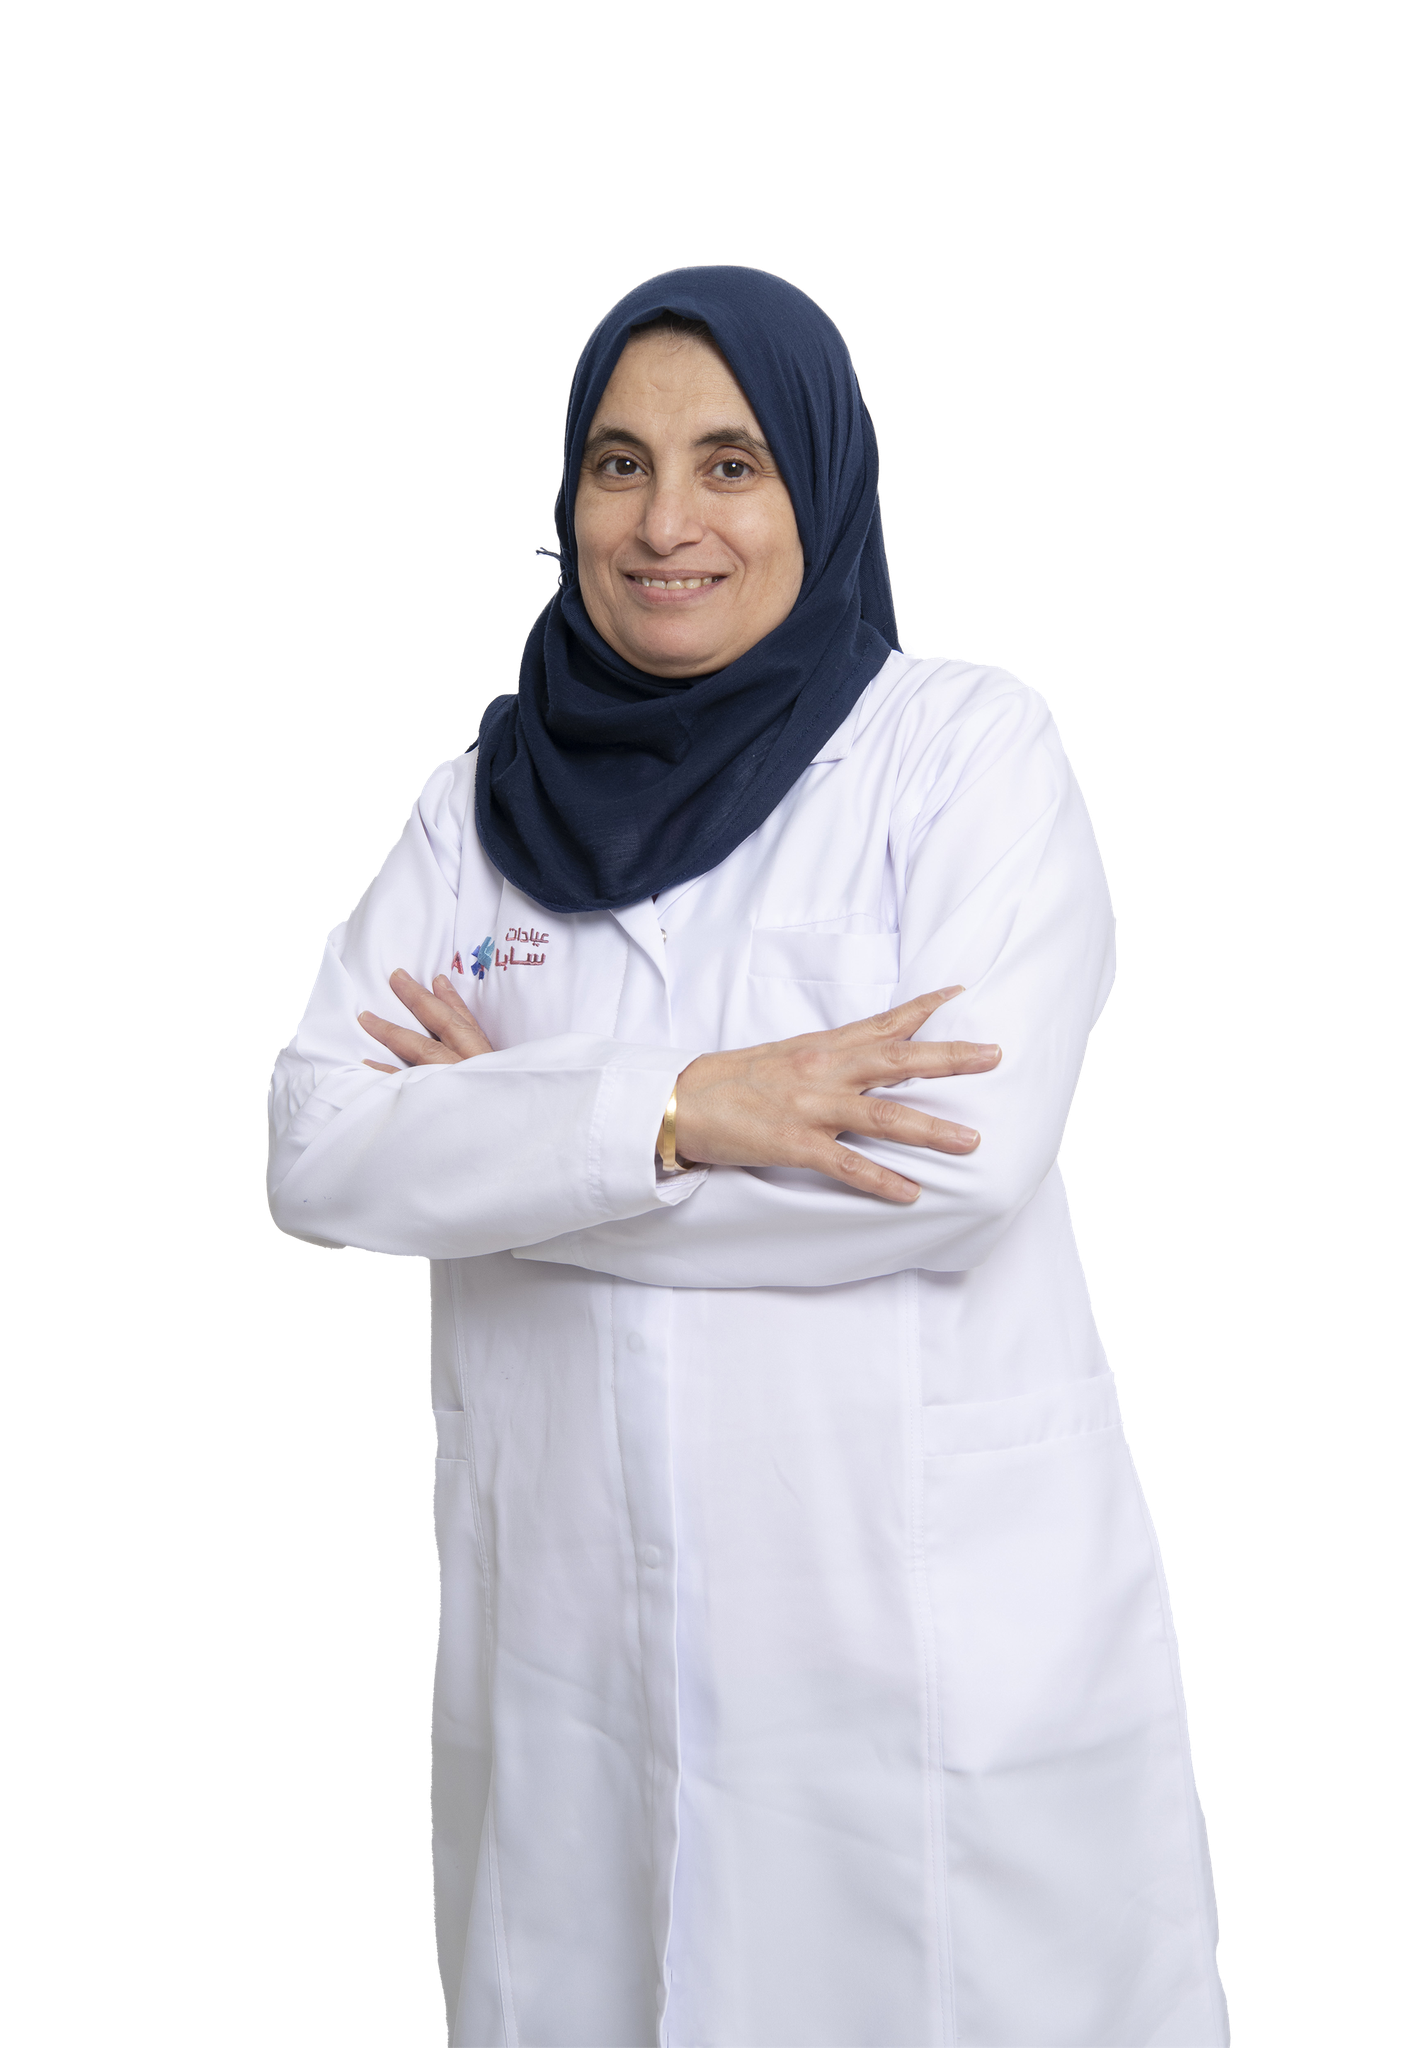 Dr. Mona Al Deeb